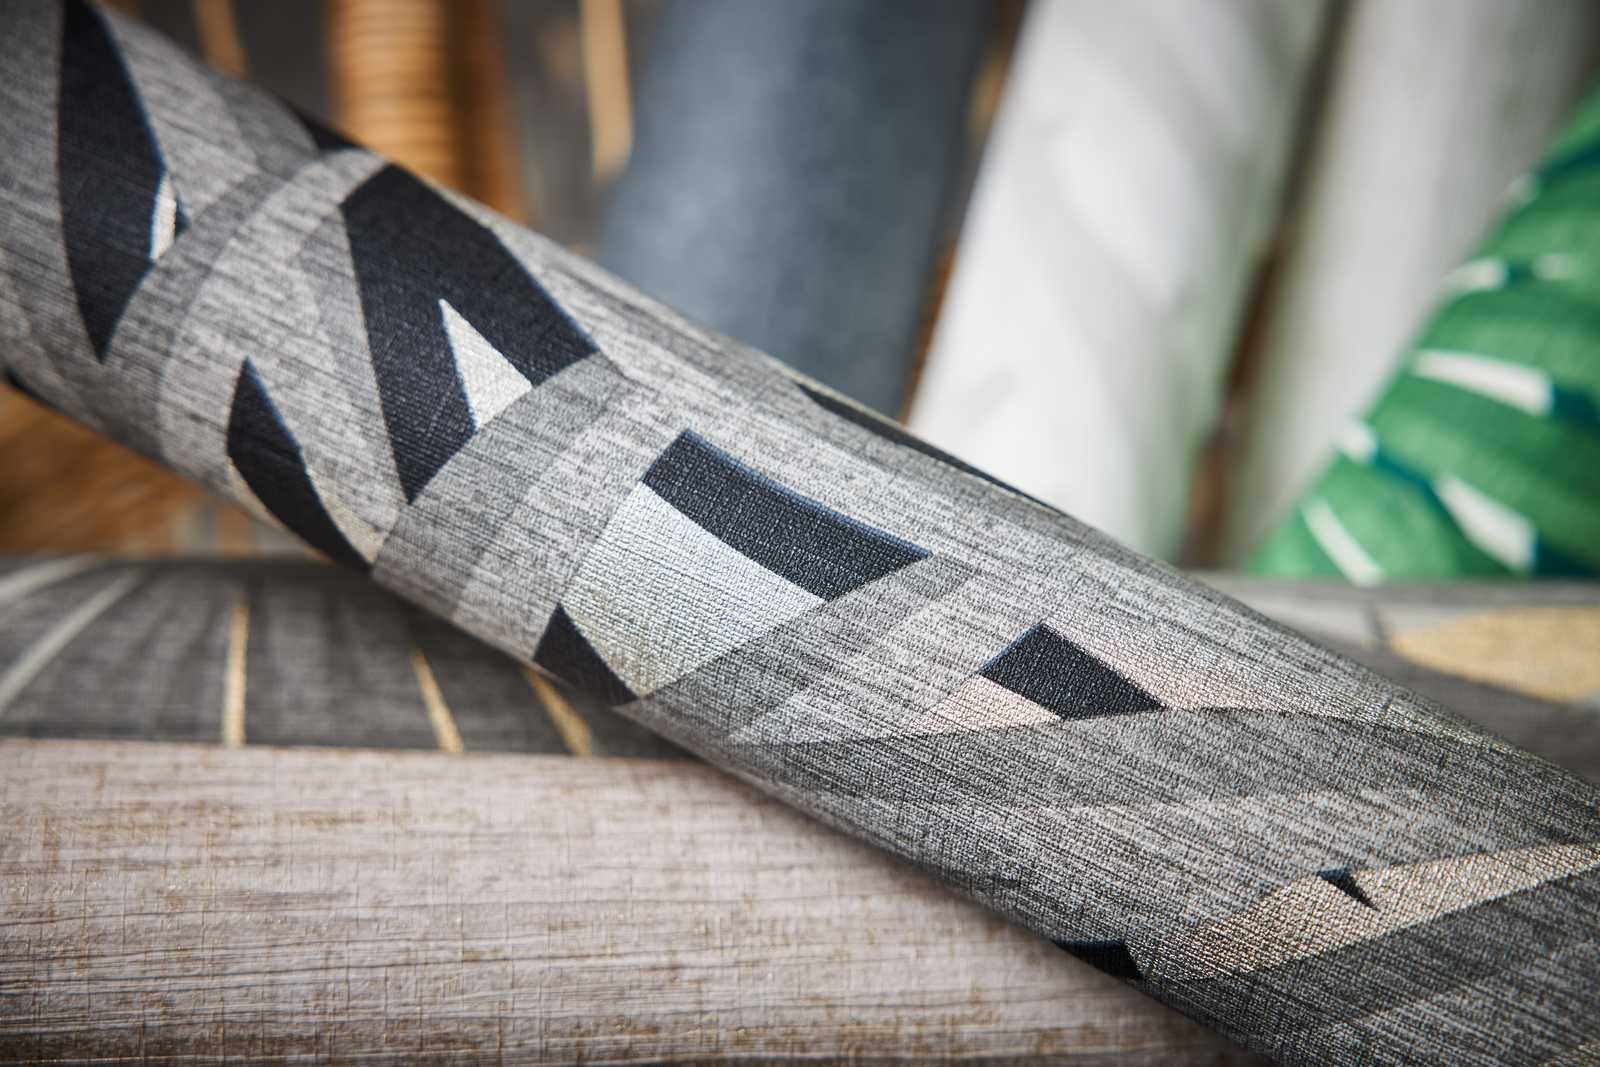             Papel pintado no tejido de diseño selvático con efecto metálico - gris, metálico, negro
        